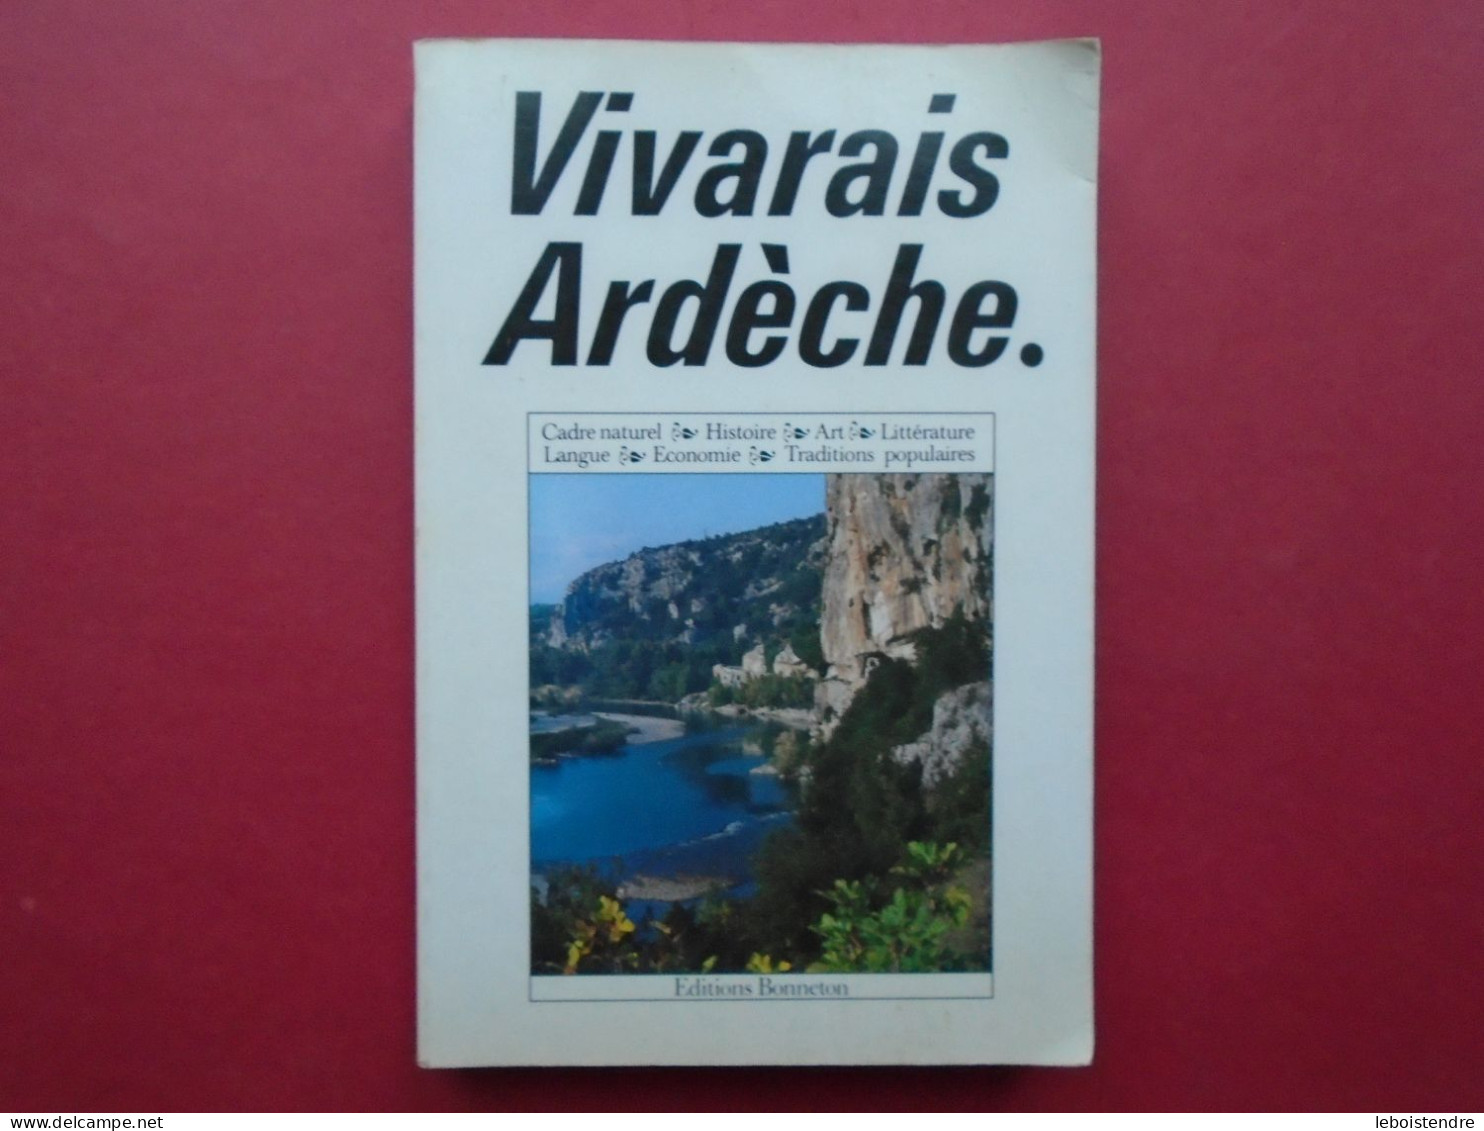 VIVARAIS ARDECHE CADRE NATUREL HISTOIRE ART LITTERATURE LANGUE TRADITIONS POPULAIRES ECONOMIE 1991 CARLAT ED BONNETON - Rhône-Alpes